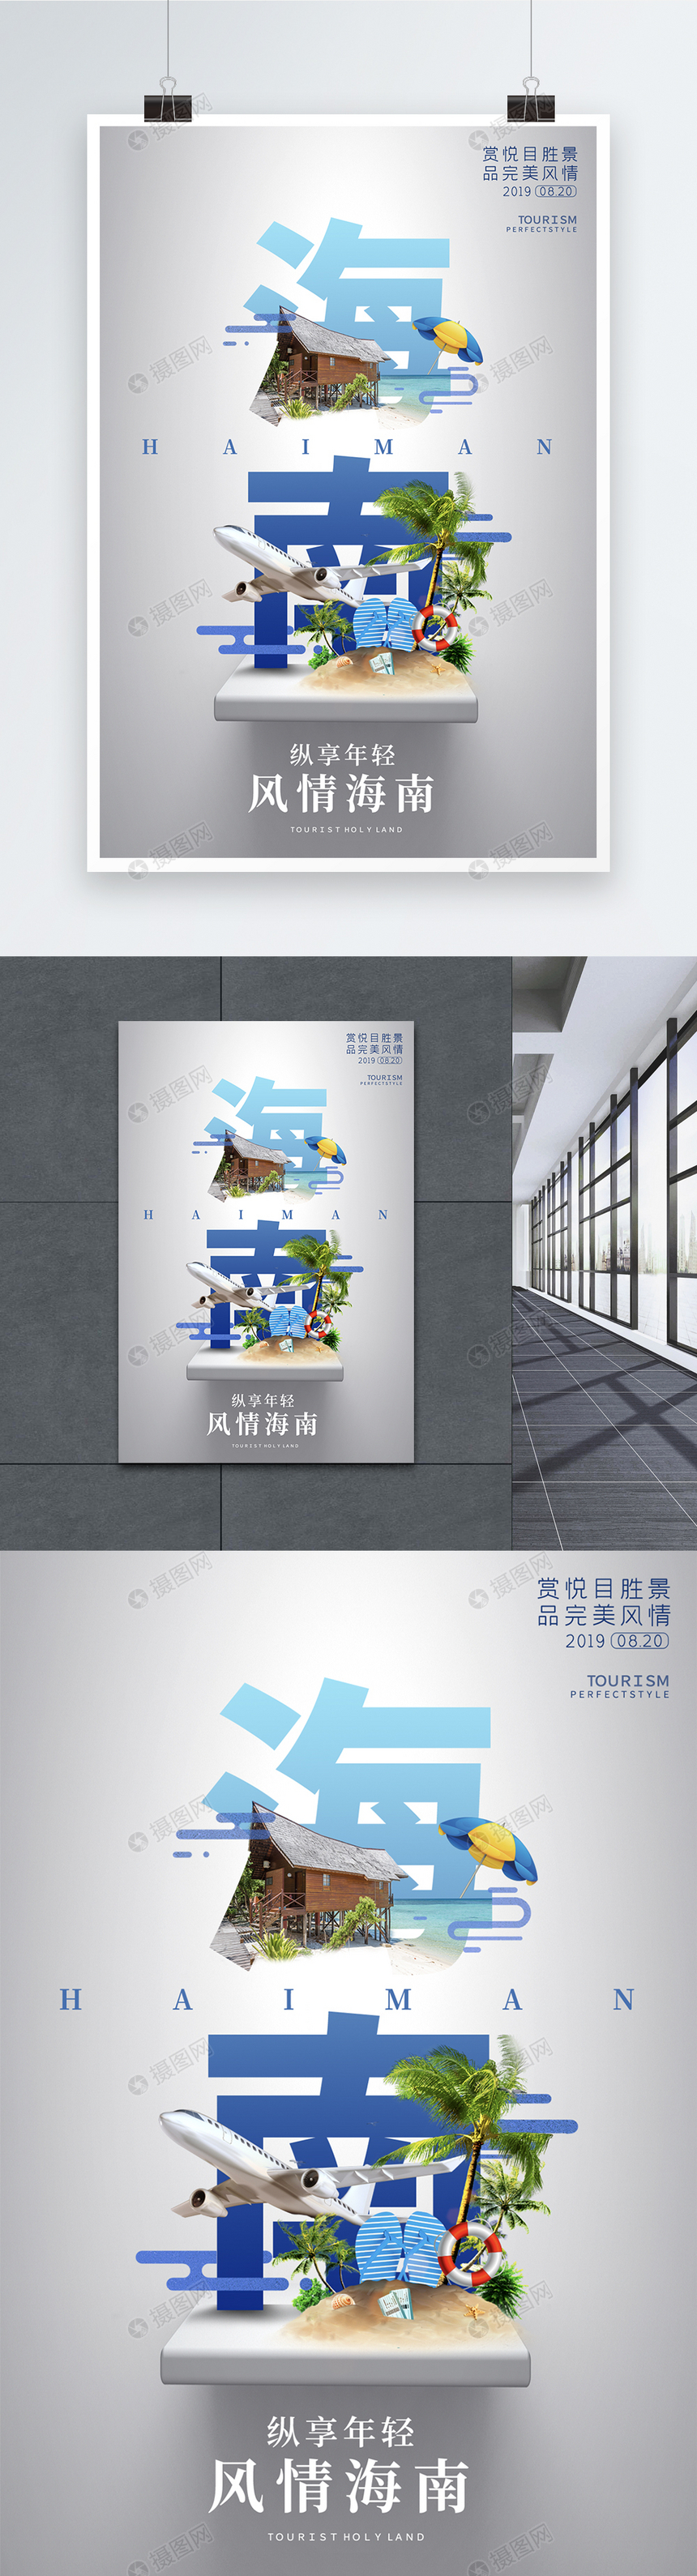 海南城市旅游宣传高端系列海报图片